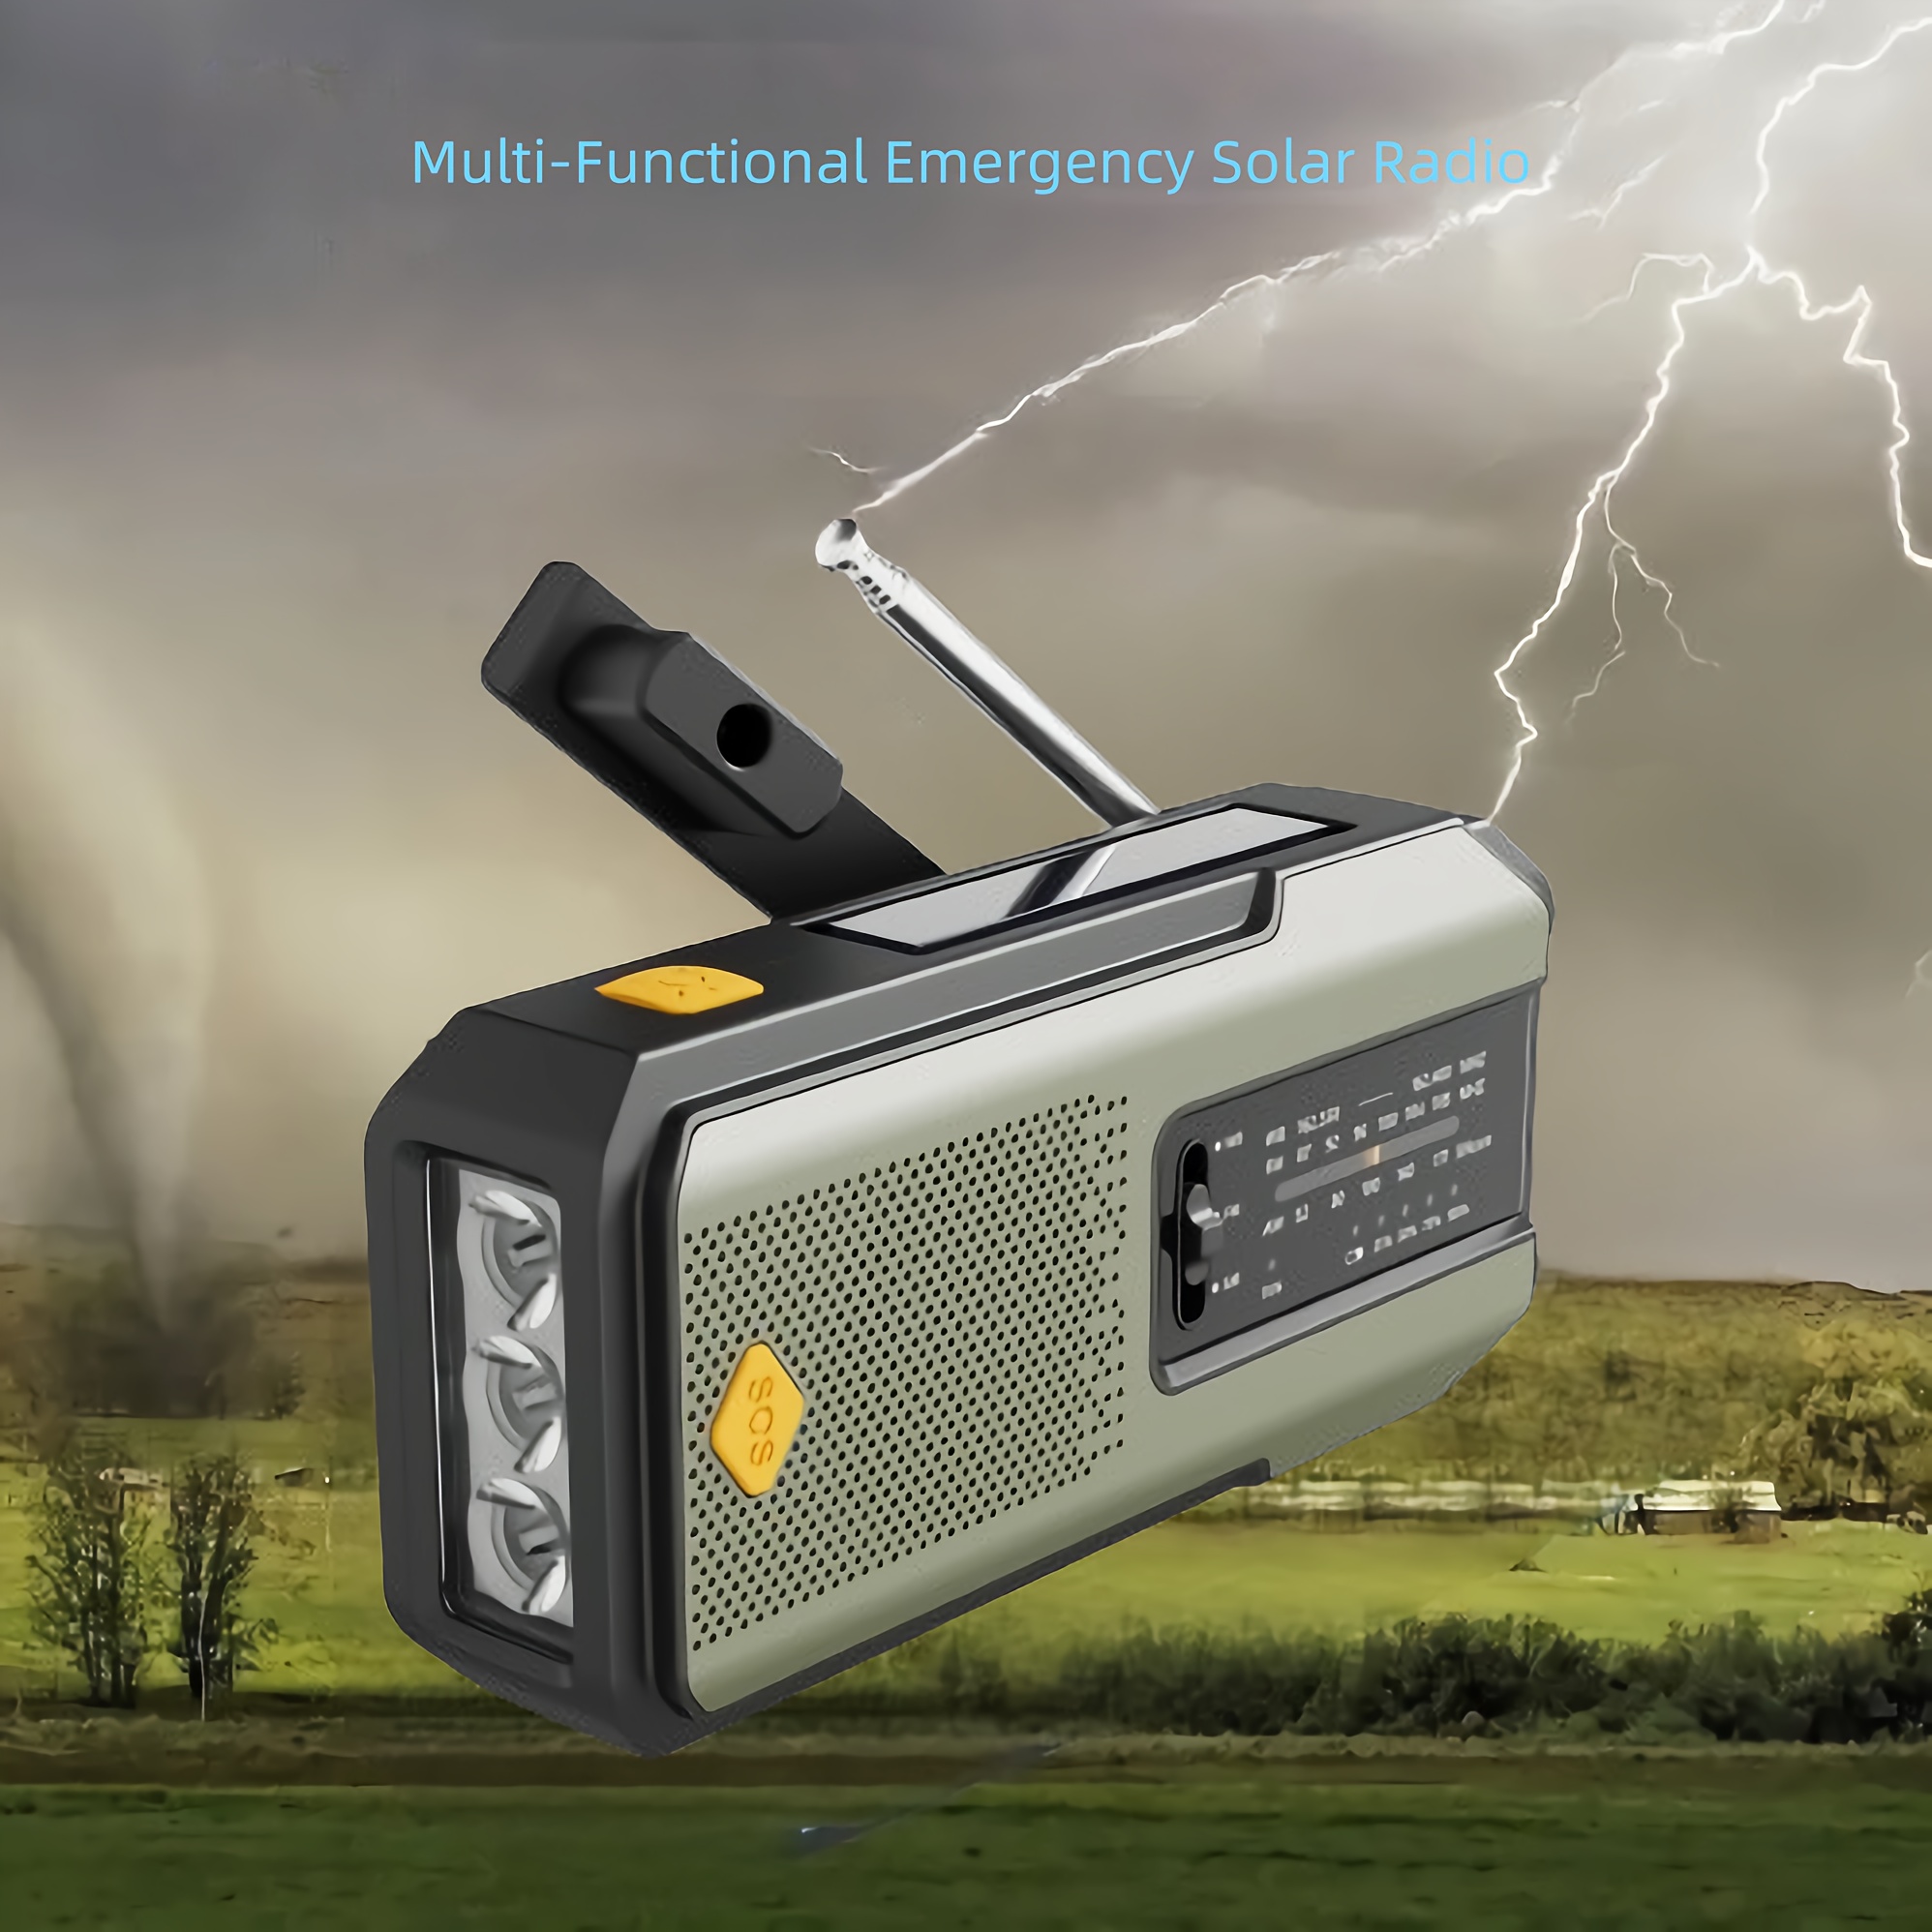 AM FM SW1 SW2 Radio multibanda Radio de emergencia multifuncional para  exteriores Radio portátil con manivela de mano con energía solar Universal  Accesorios Electrónicos